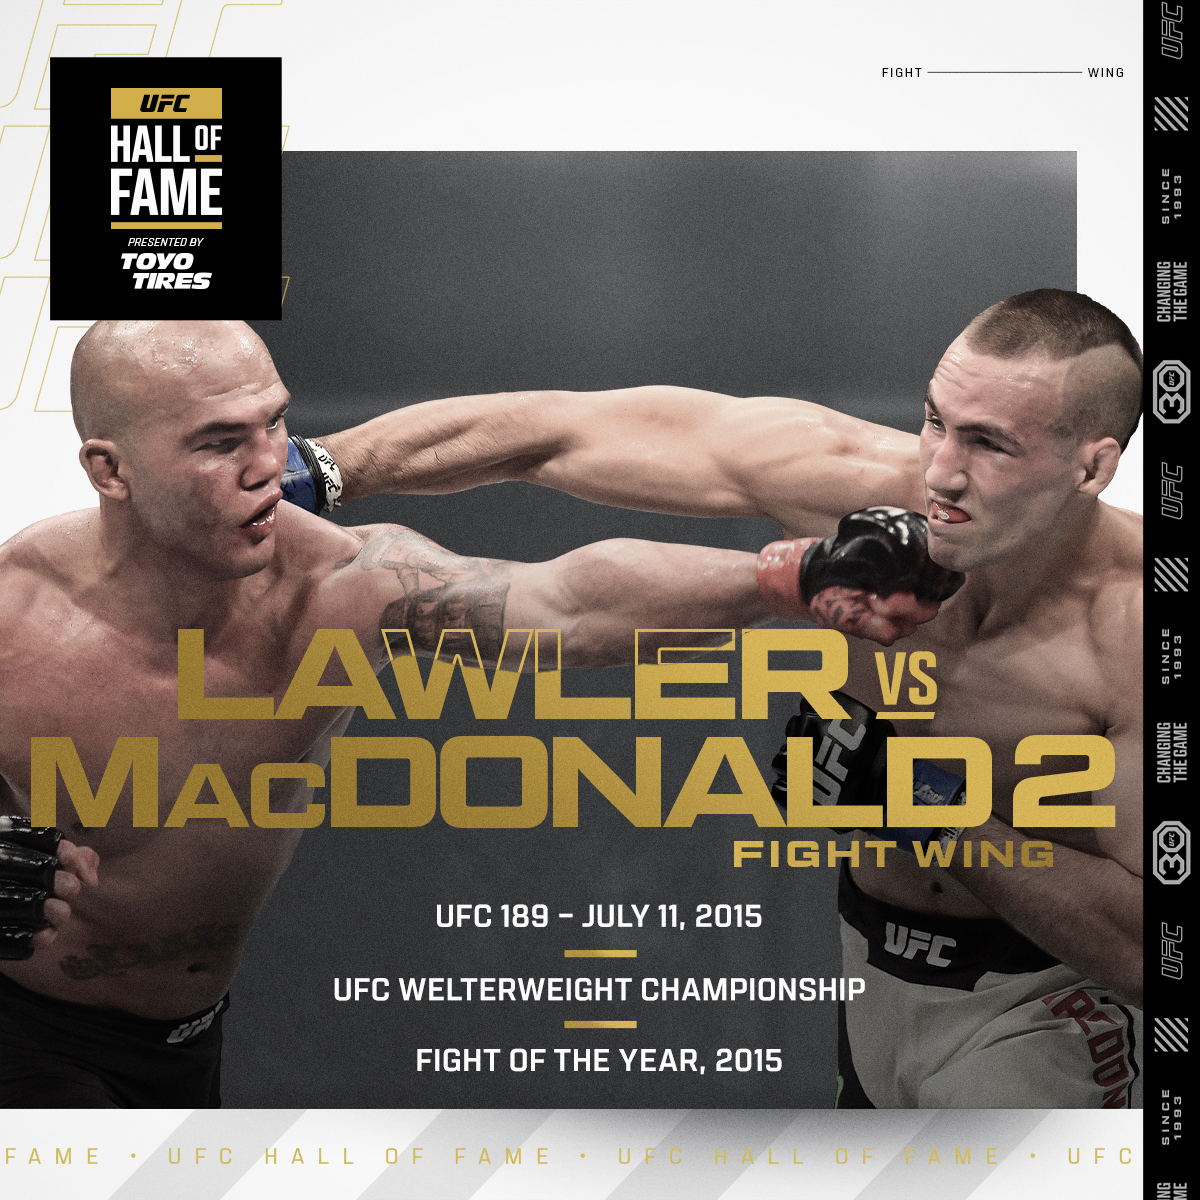  Imagem oficial da indicação de Lawler vs MacDonald 2 para o HoF. (Foto: Divulgação/ UFC)